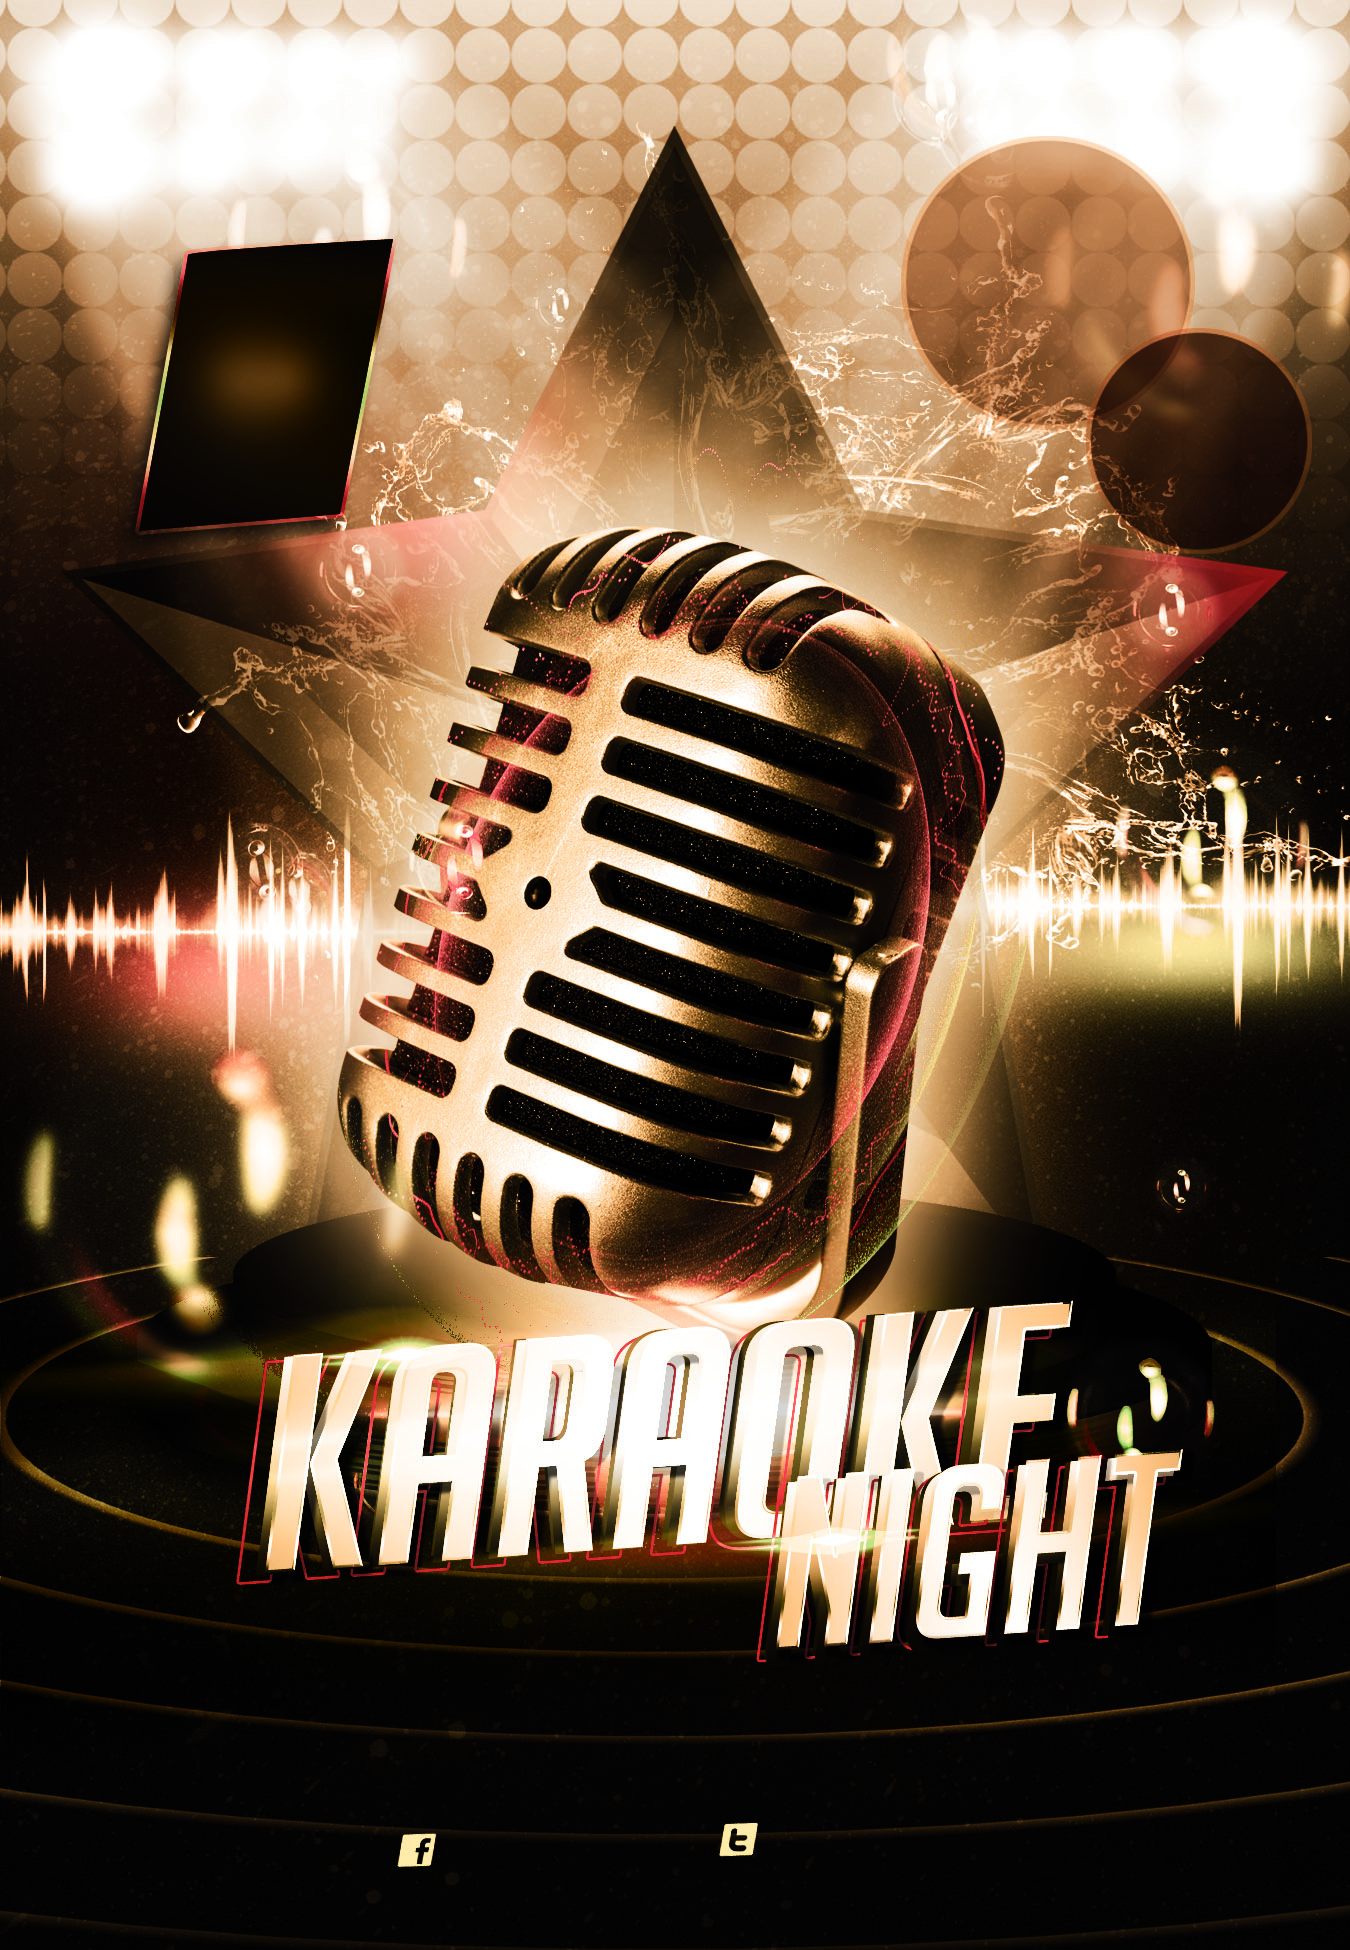 karaoke night party - Top Cats är ett svenskt rockabillyband bildat 2001 i Torsby.